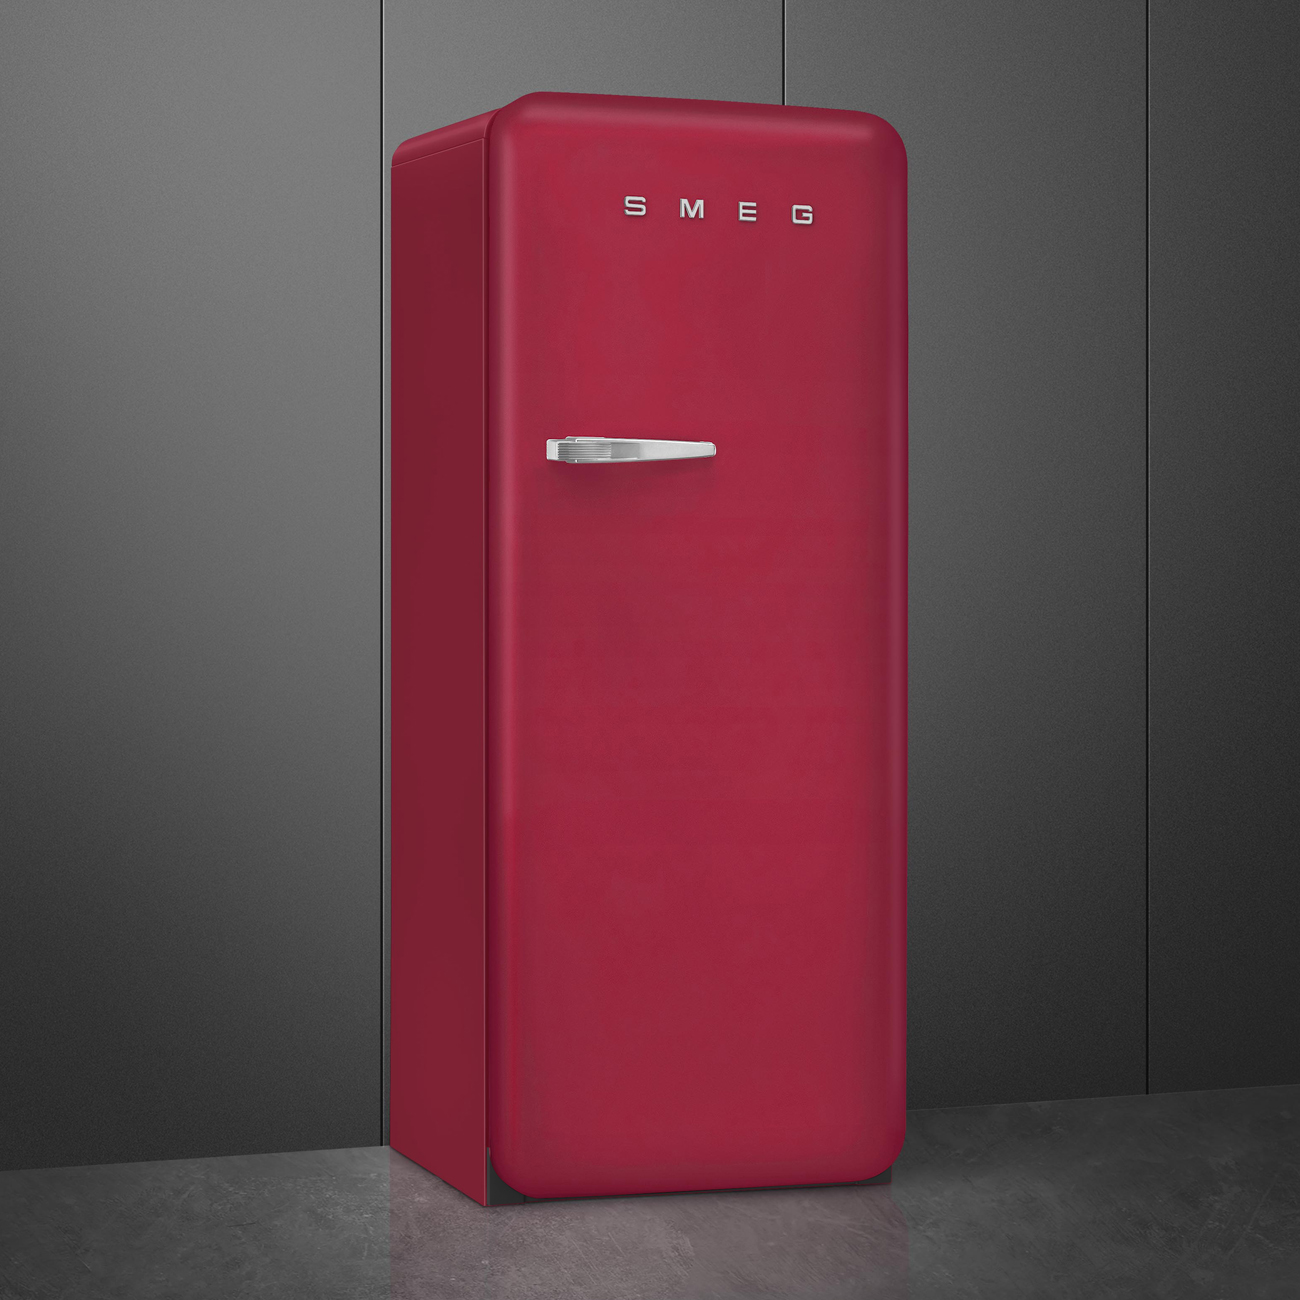 Ruby Red refrigerator - Smeg_2